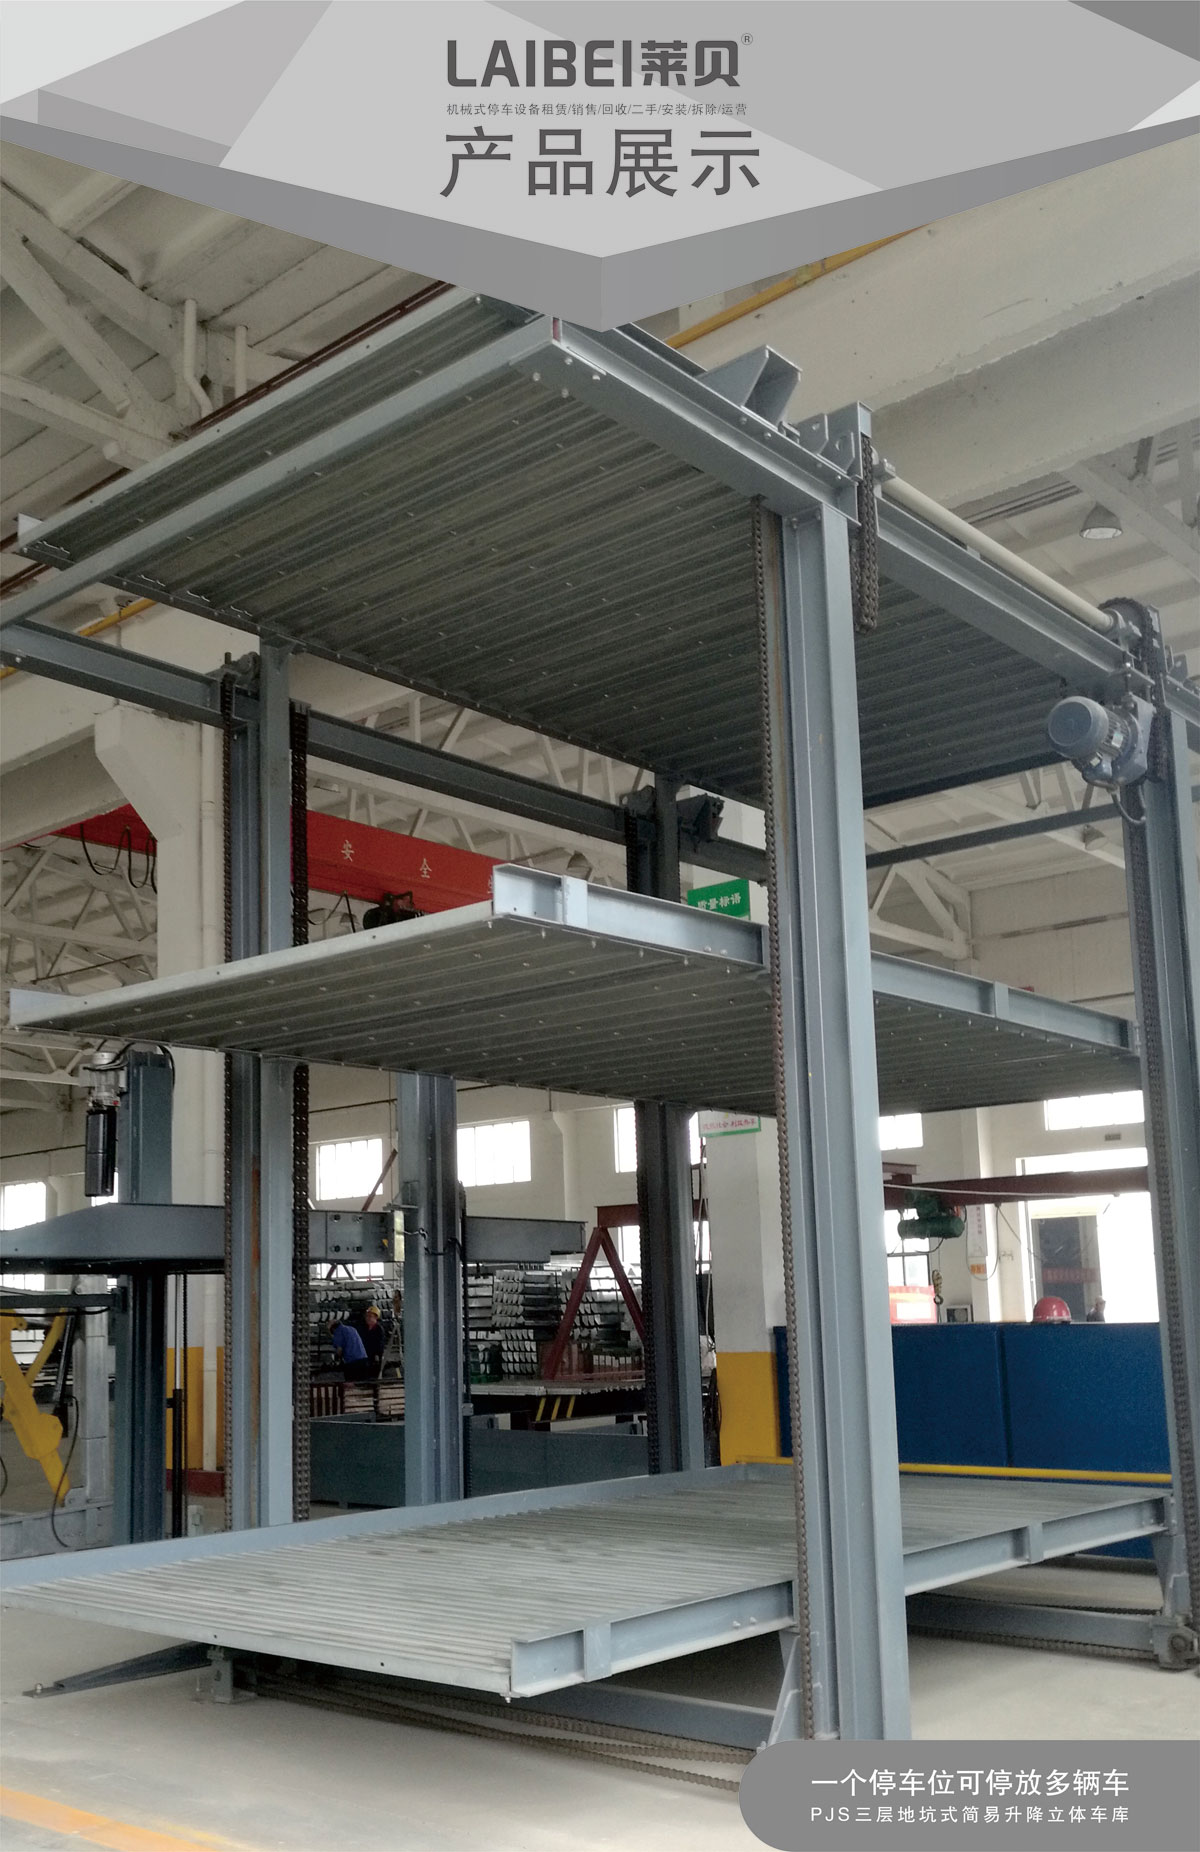 贵阳莱贝PJS3-D2三层地坑简易升降机械式立体停车库产品展示.jpg